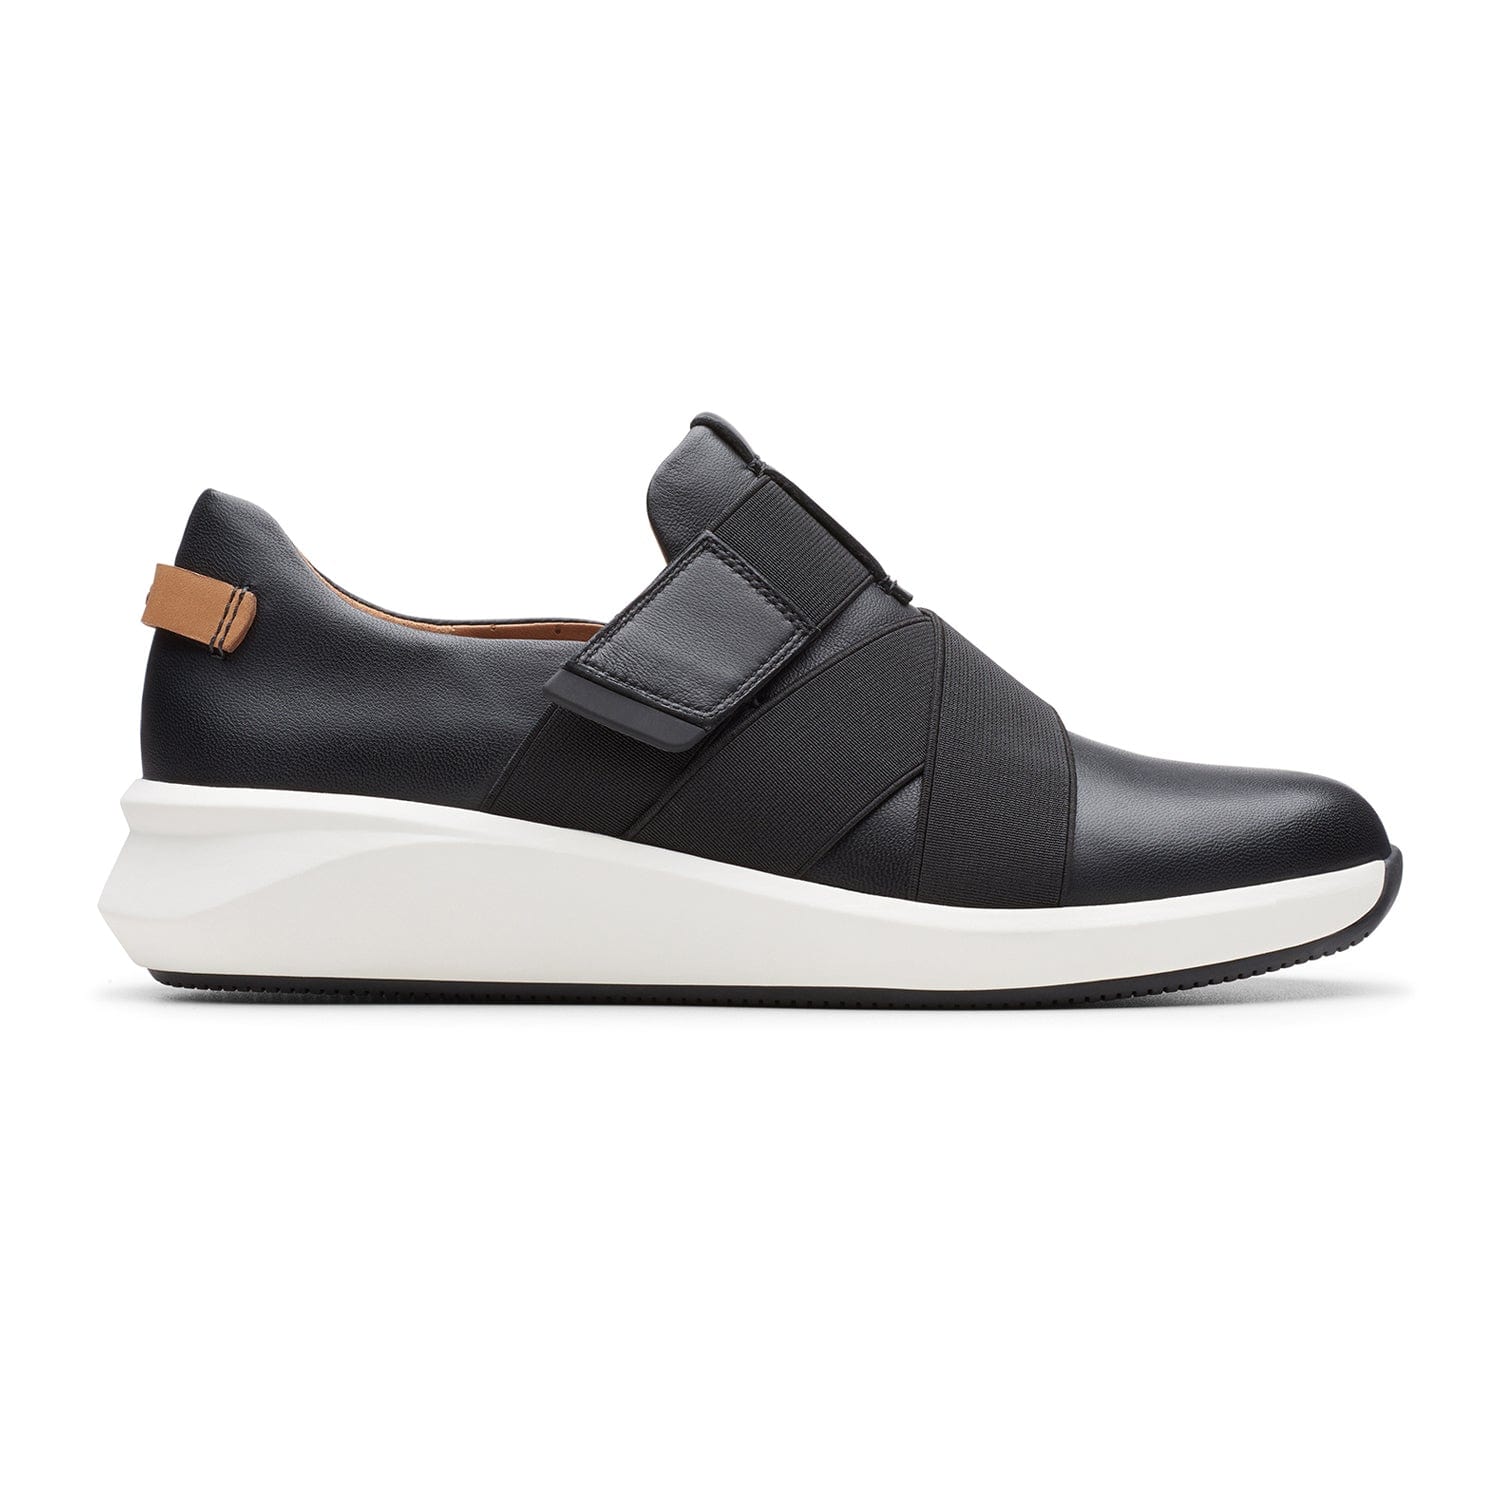 Clarks Un Rio Strap Shoes - Black Leather - 261456145 - E Width (Wide Fit)